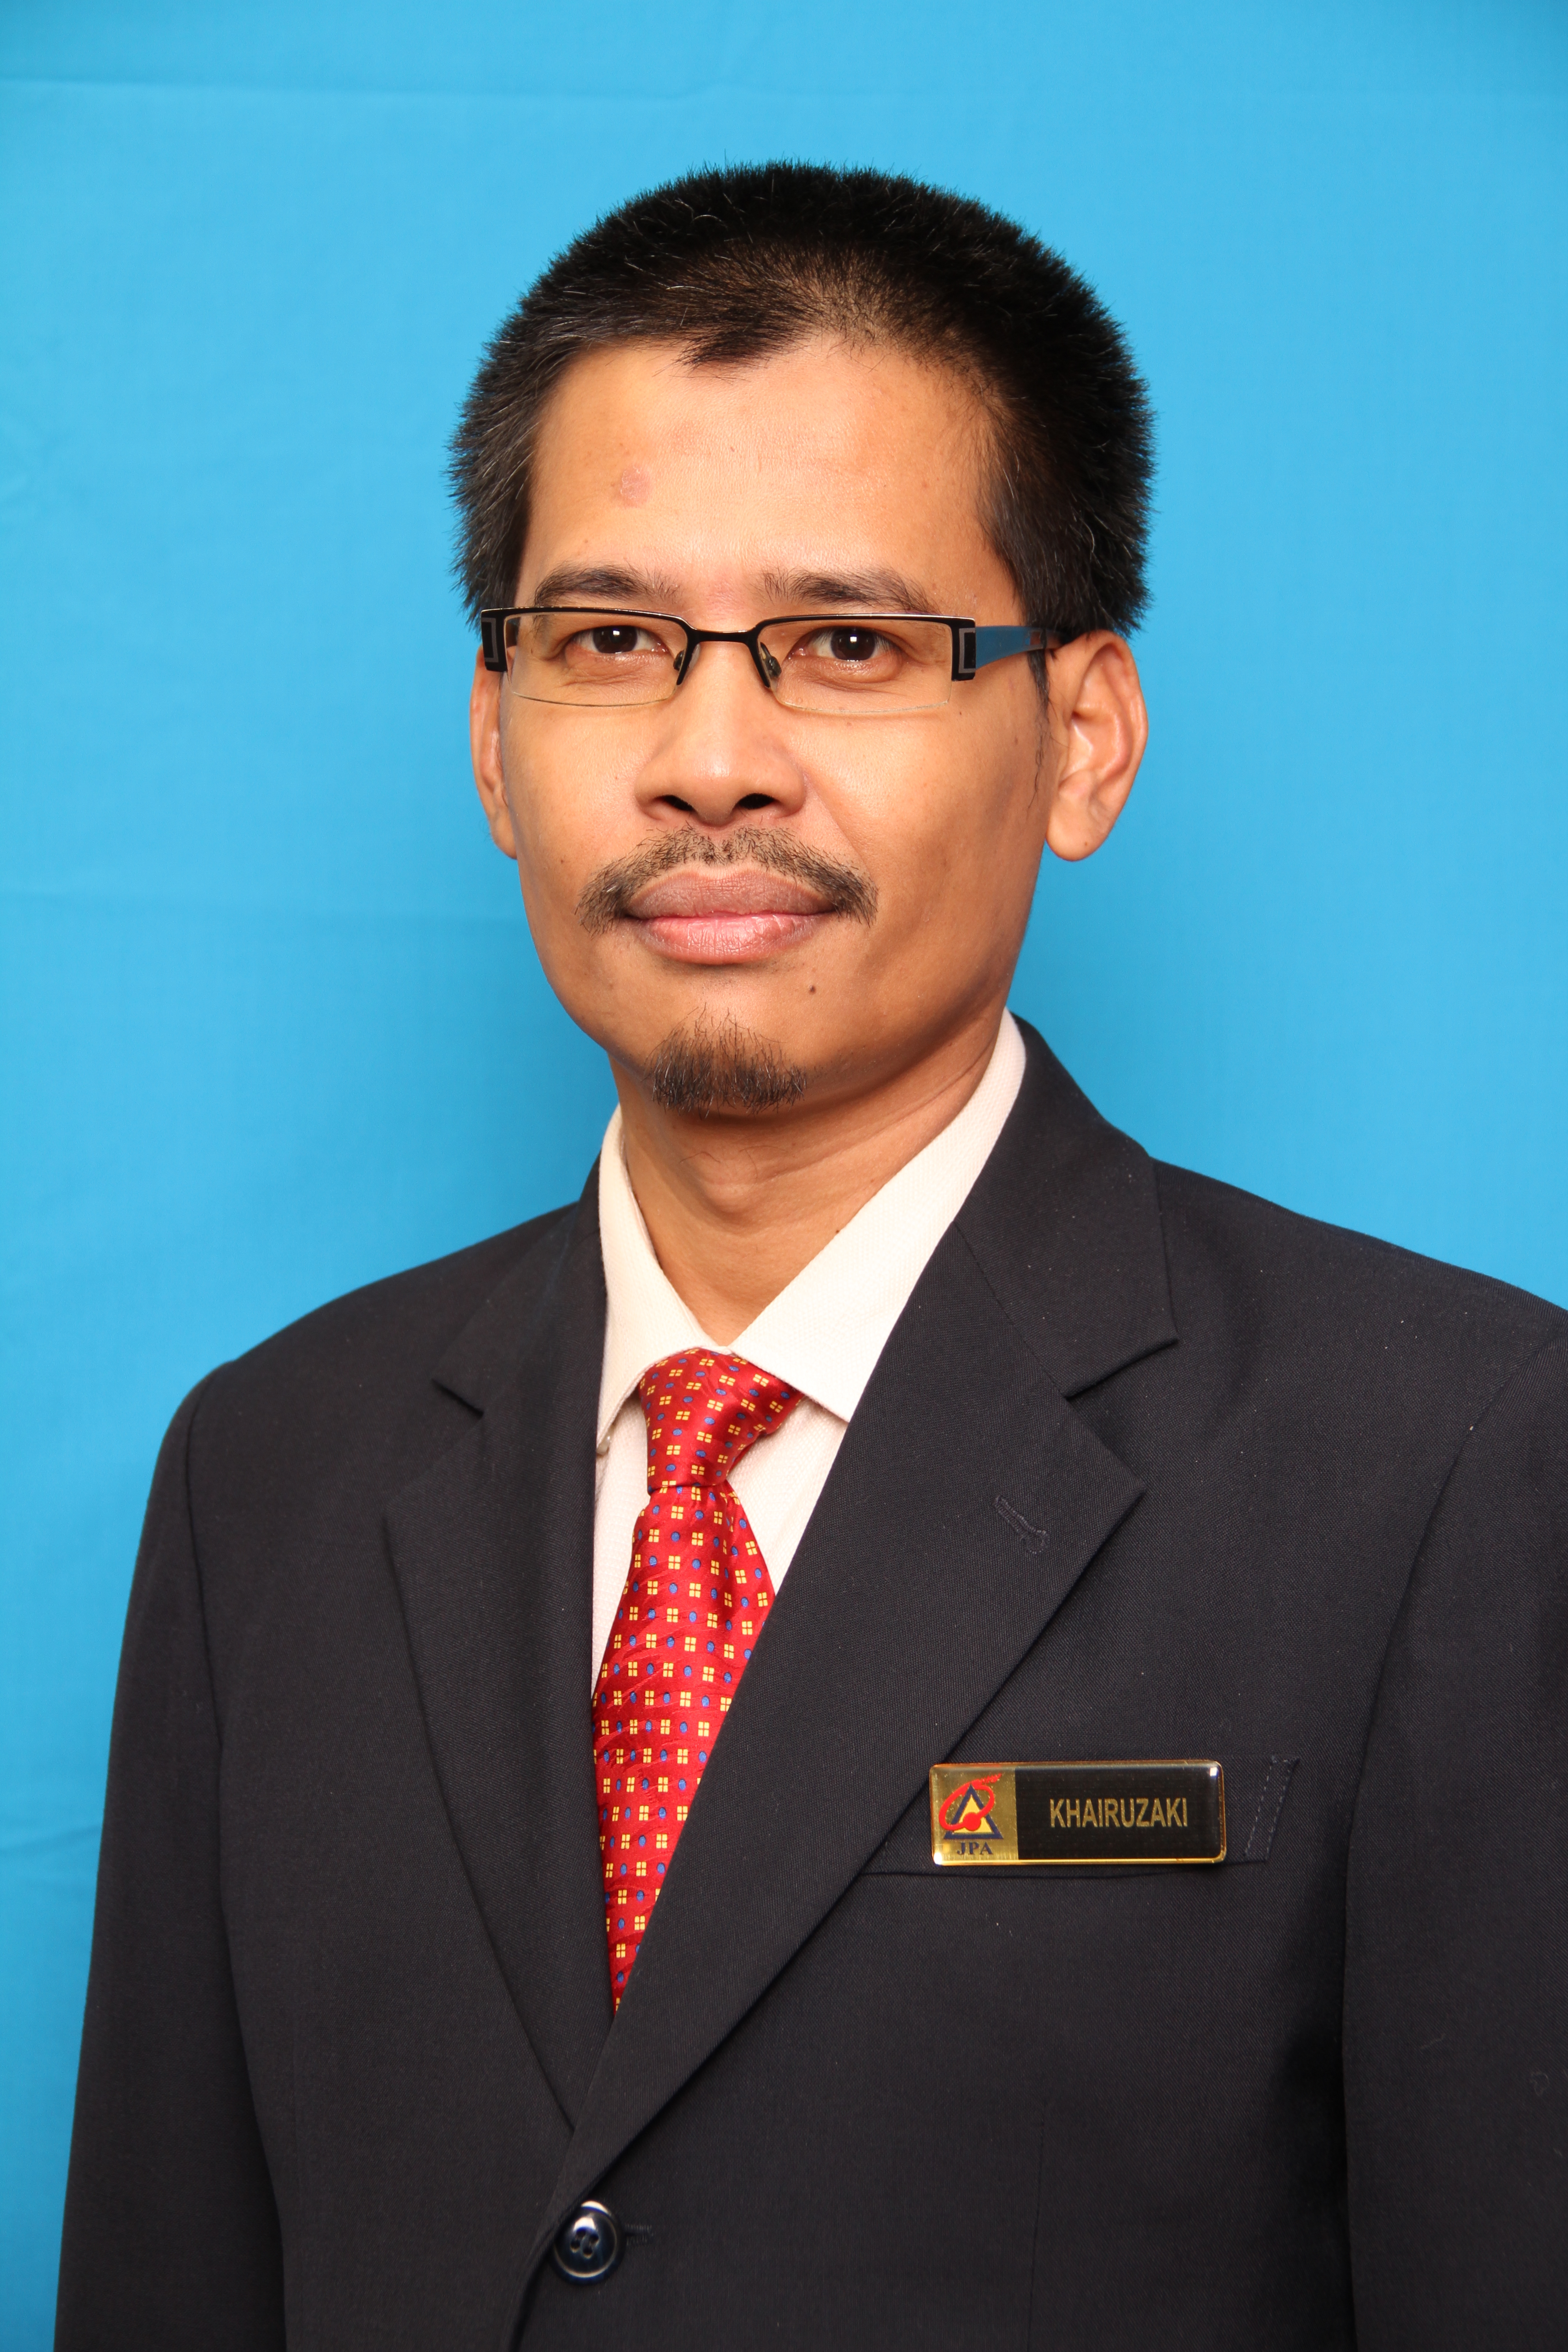 Mohd. Khairuzaki bin Paiman